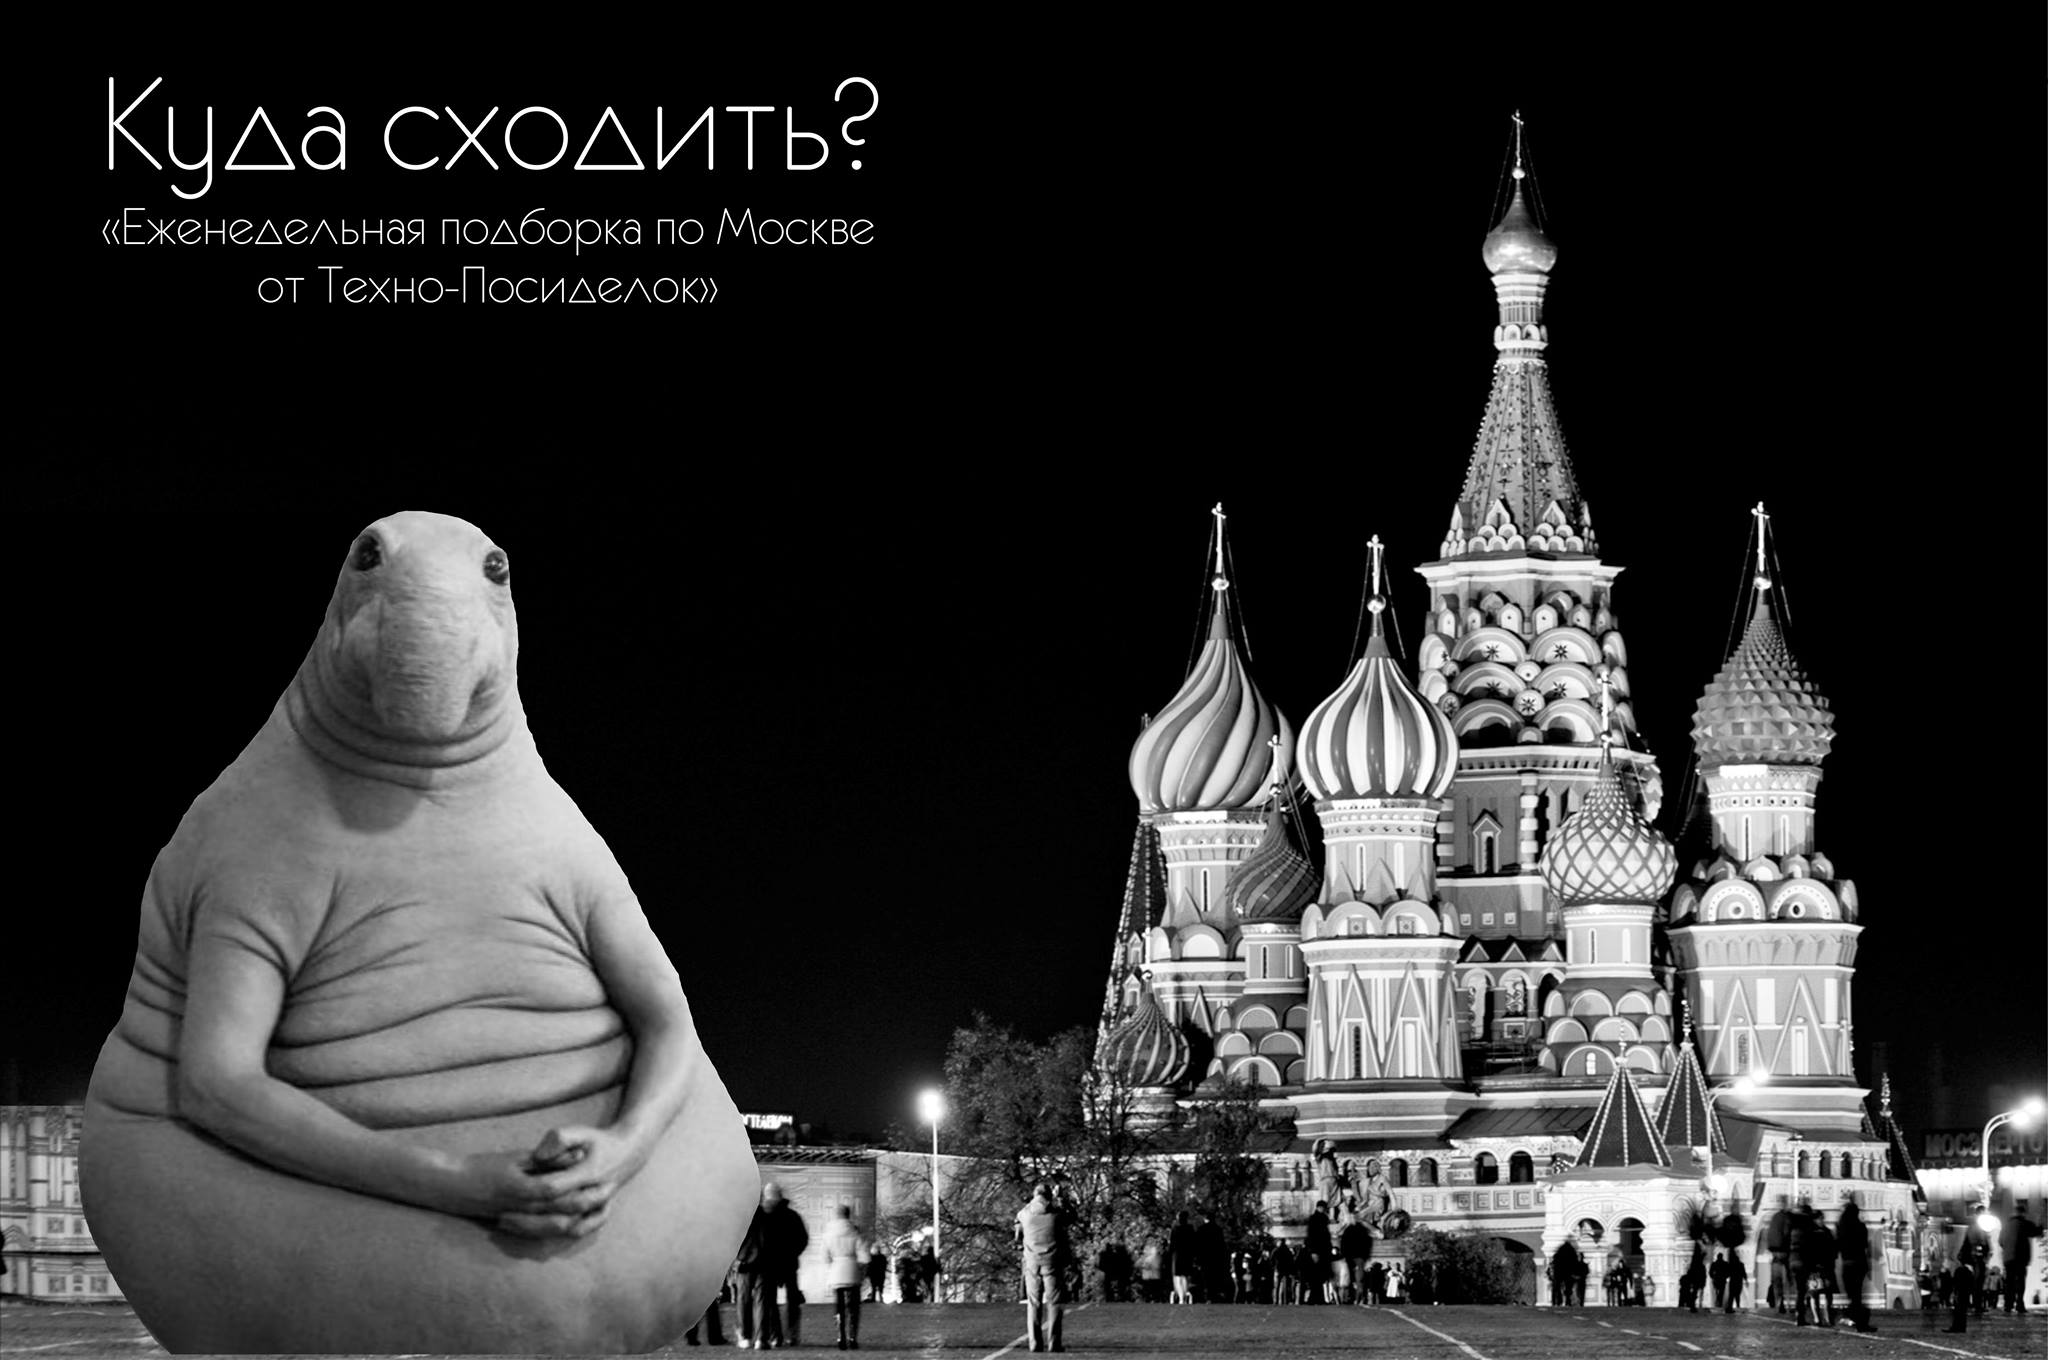 Анонс техно-вечеринок Москвы